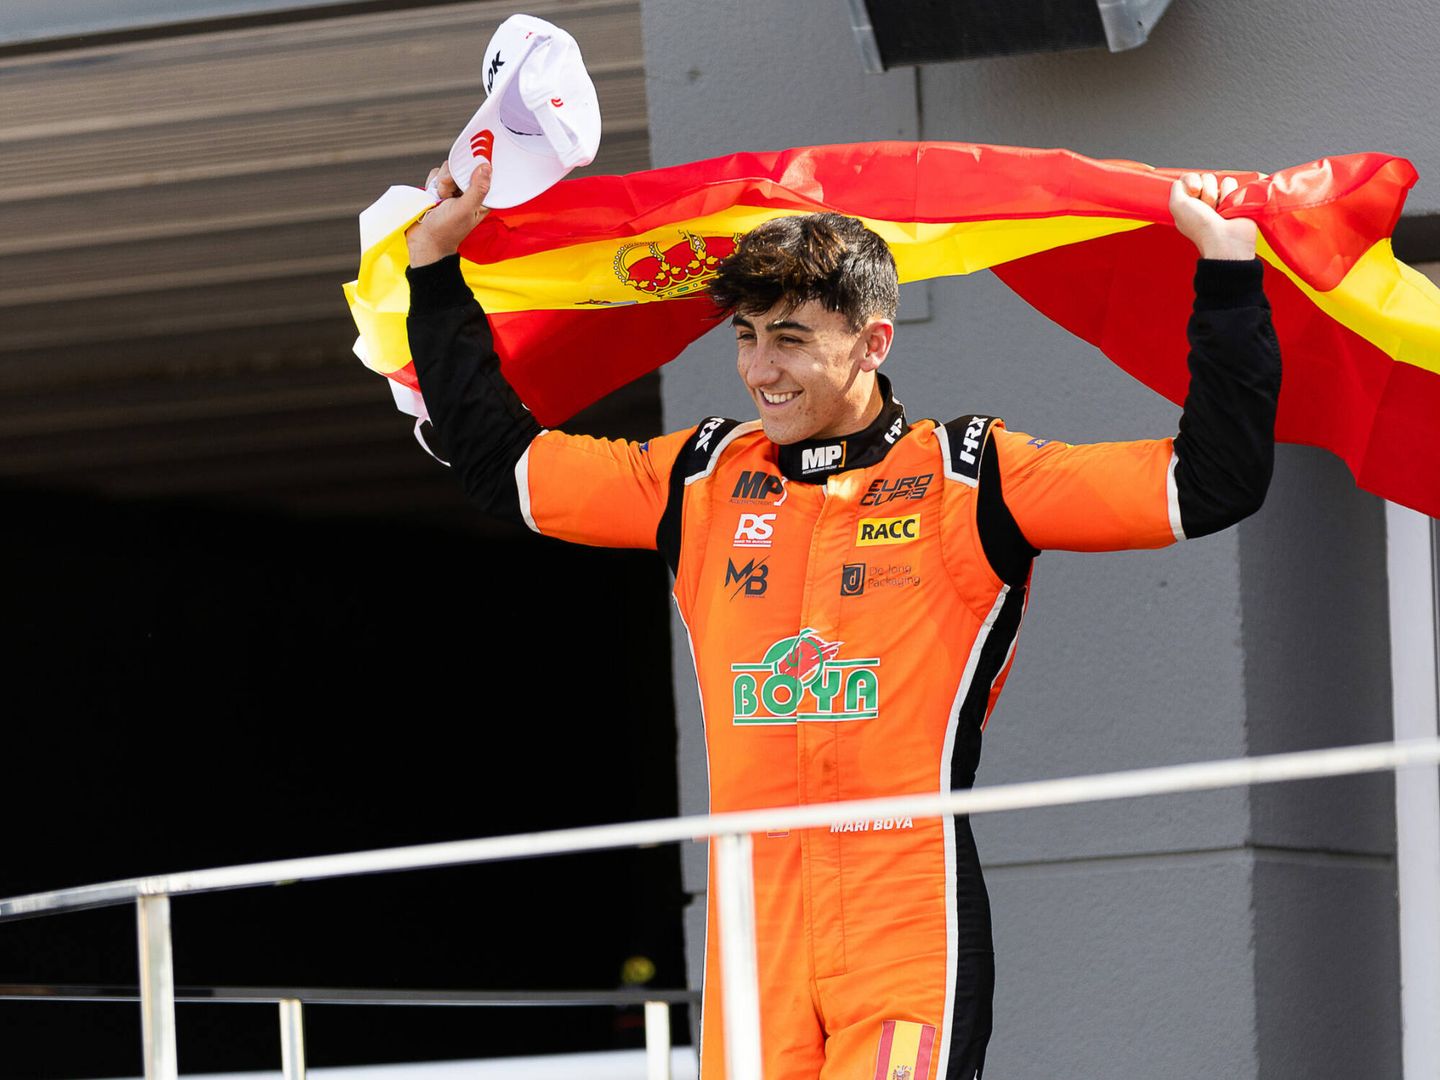 El aranés Mari Boya, es uno de los pilotos más prometedores de España. (Website Boya)